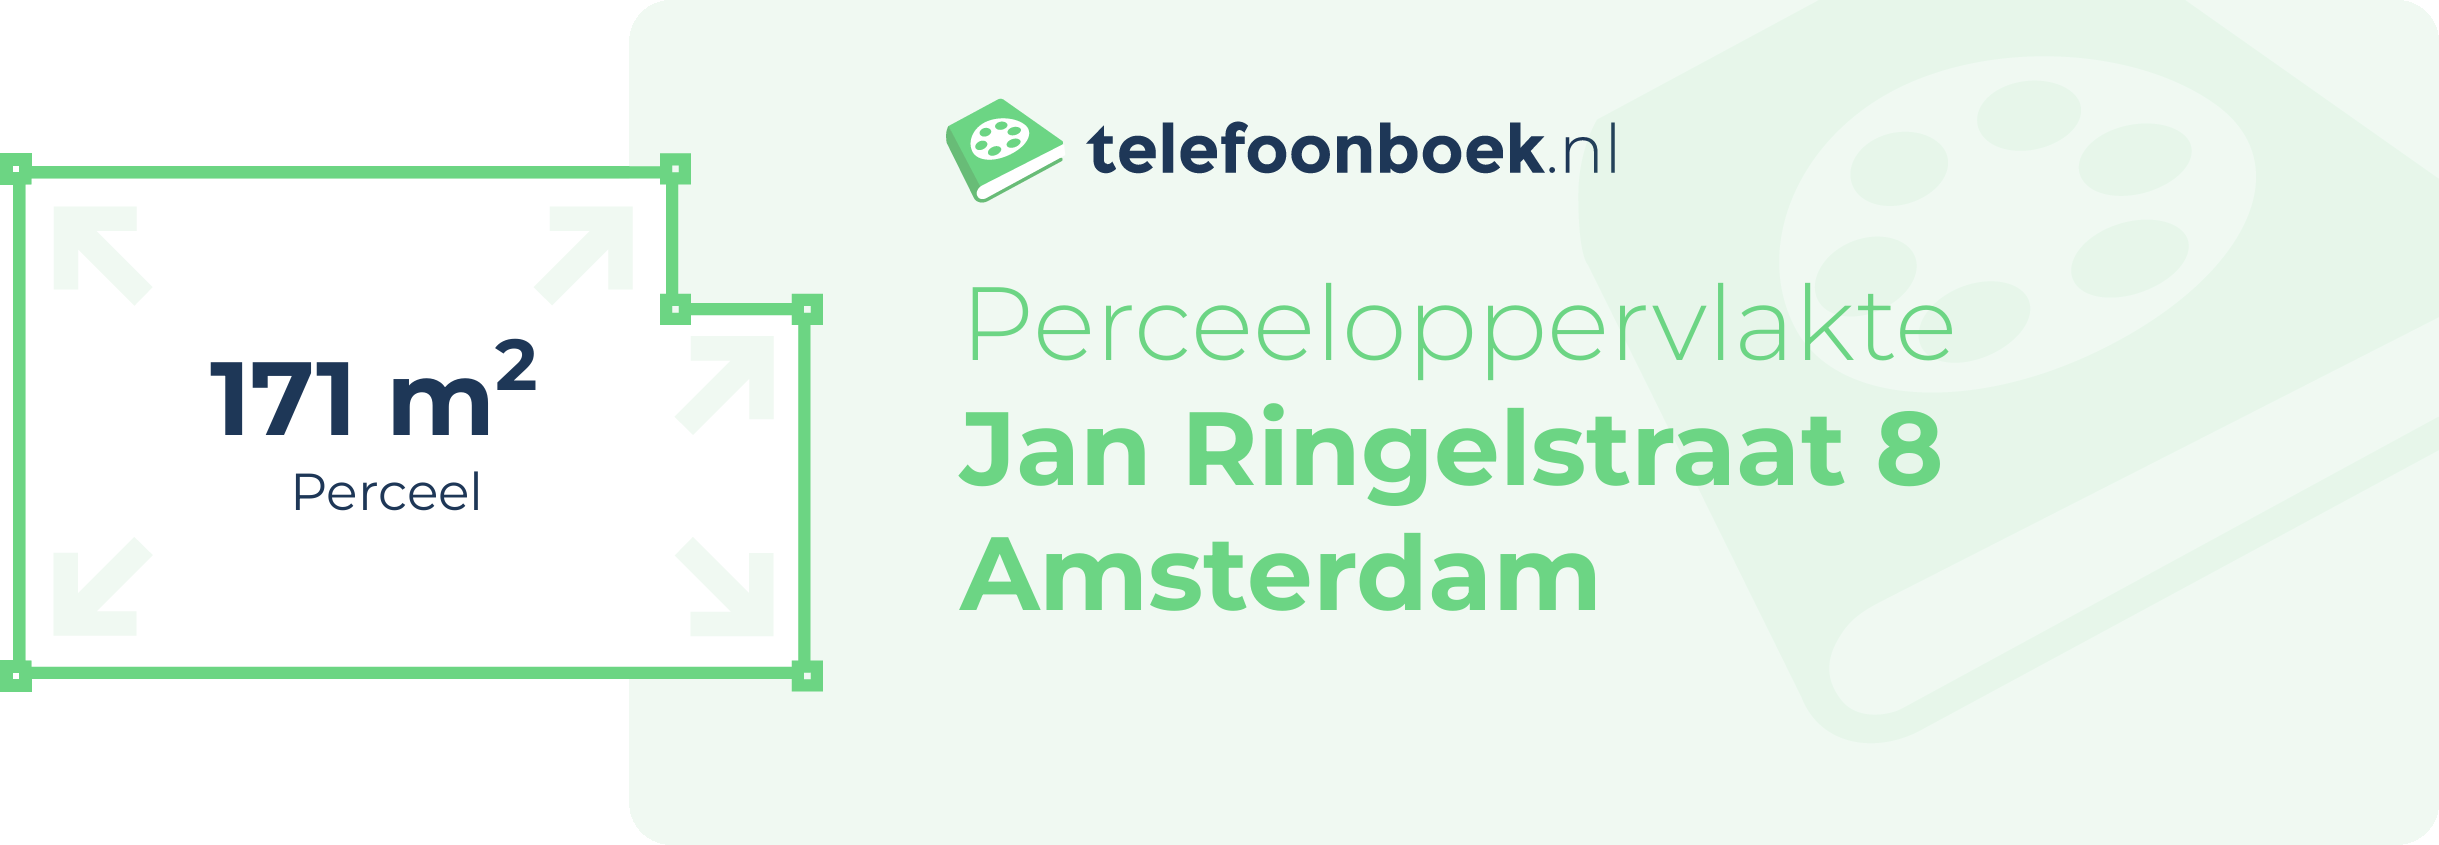 Perceeloppervlakte Jan Ringelstraat 8 Amsterdam